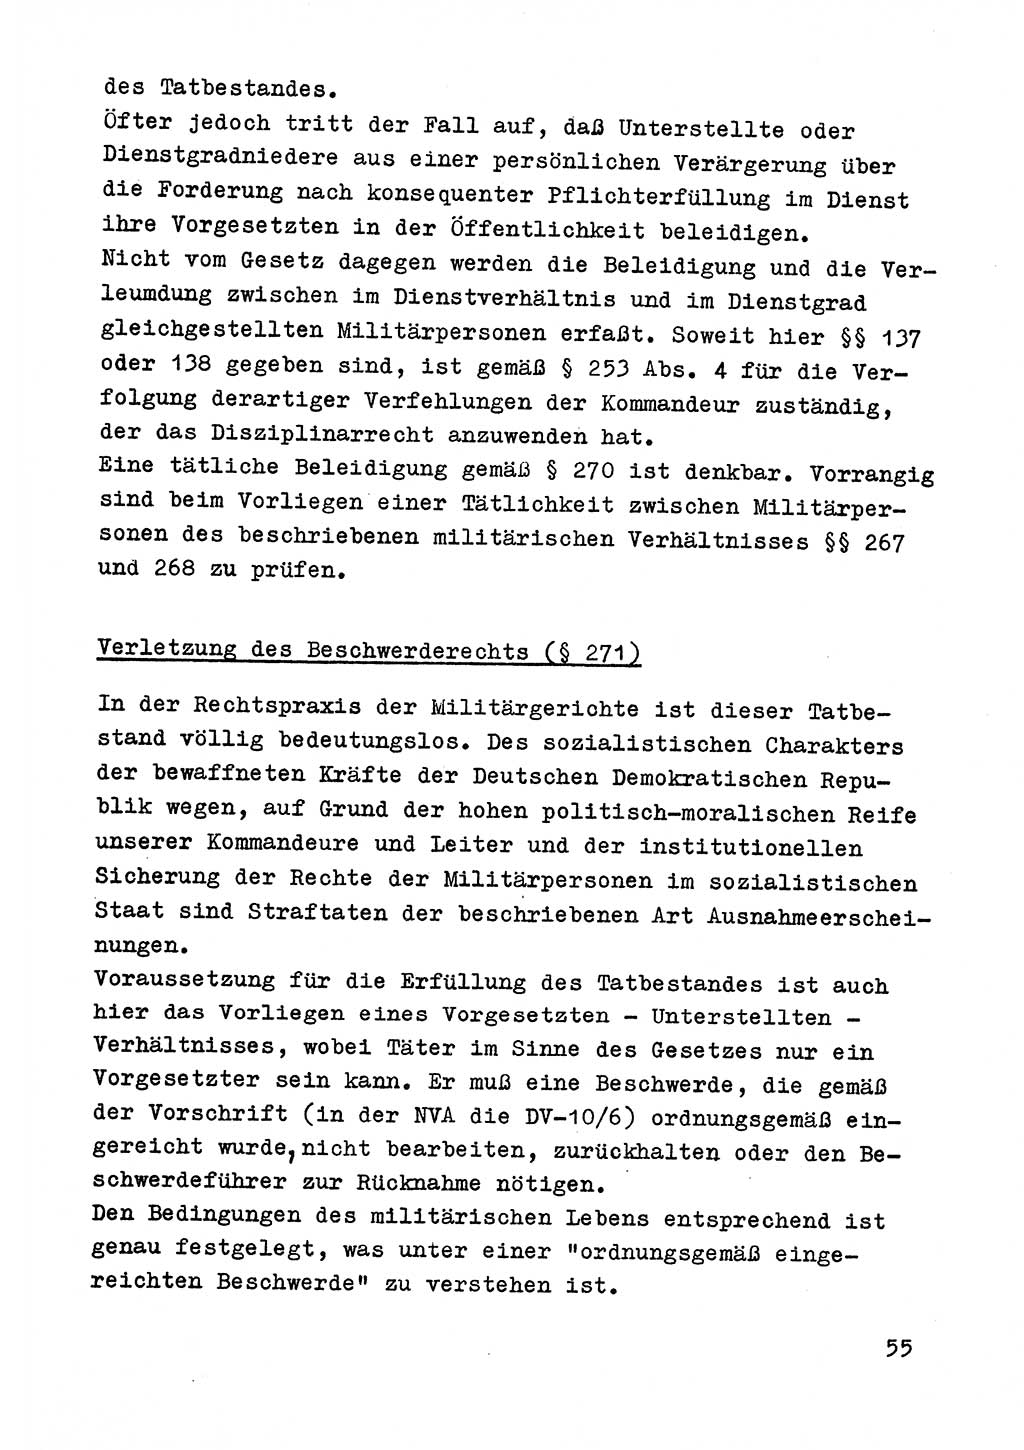 Strafrecht der DDR (Deutsche Demokratische Republik), Besonderer Teil, Lehrmaterial, Heft 9 1969, Seite 55 (Strafr. DDR BT Lehrmat. H. 9 1969, S. 55)